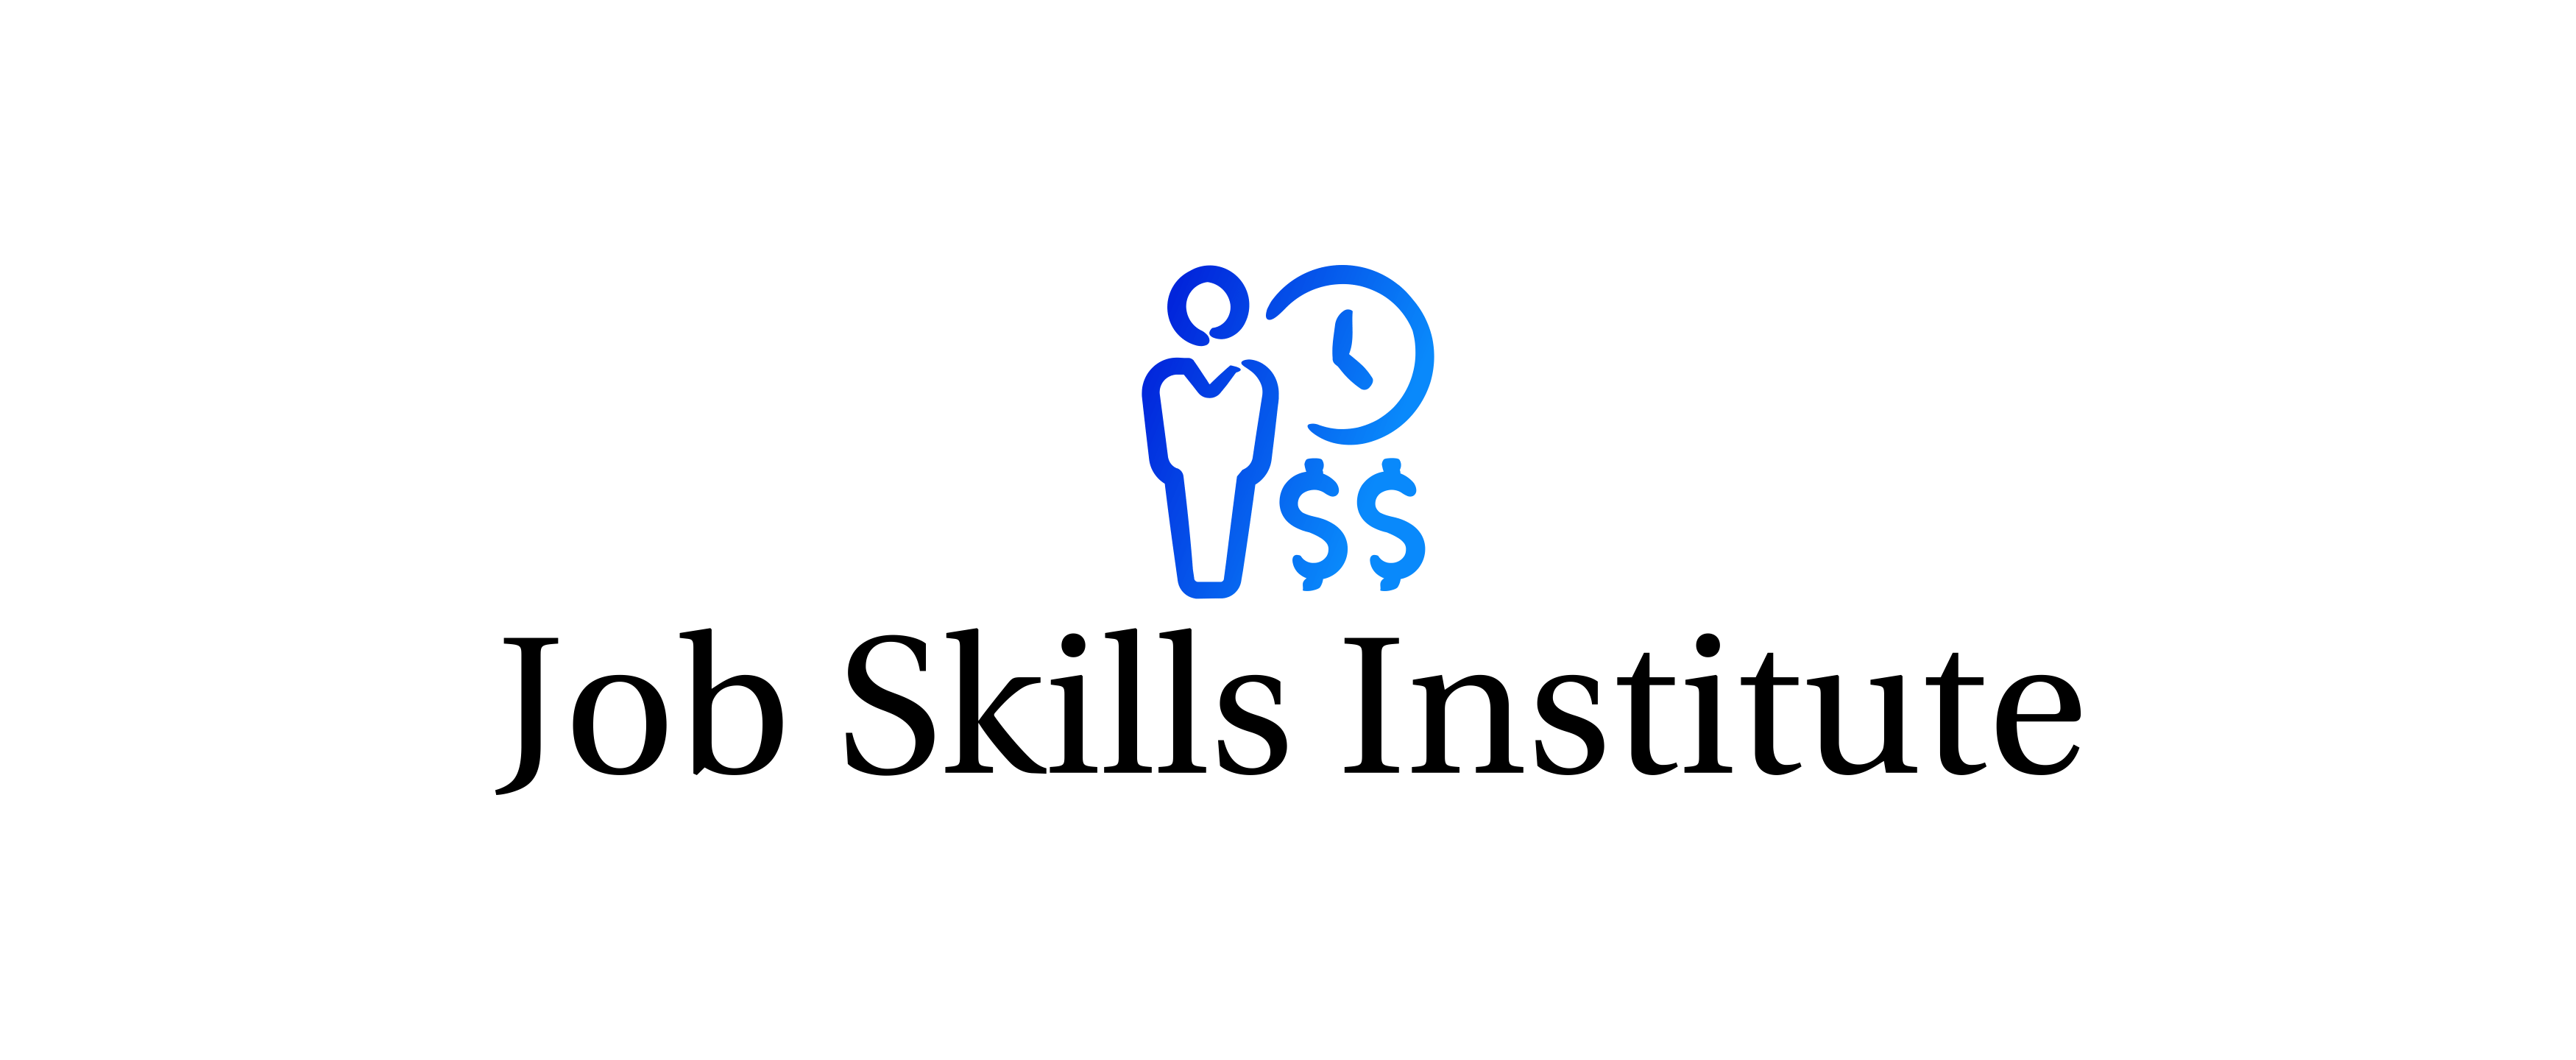 job skills institute 